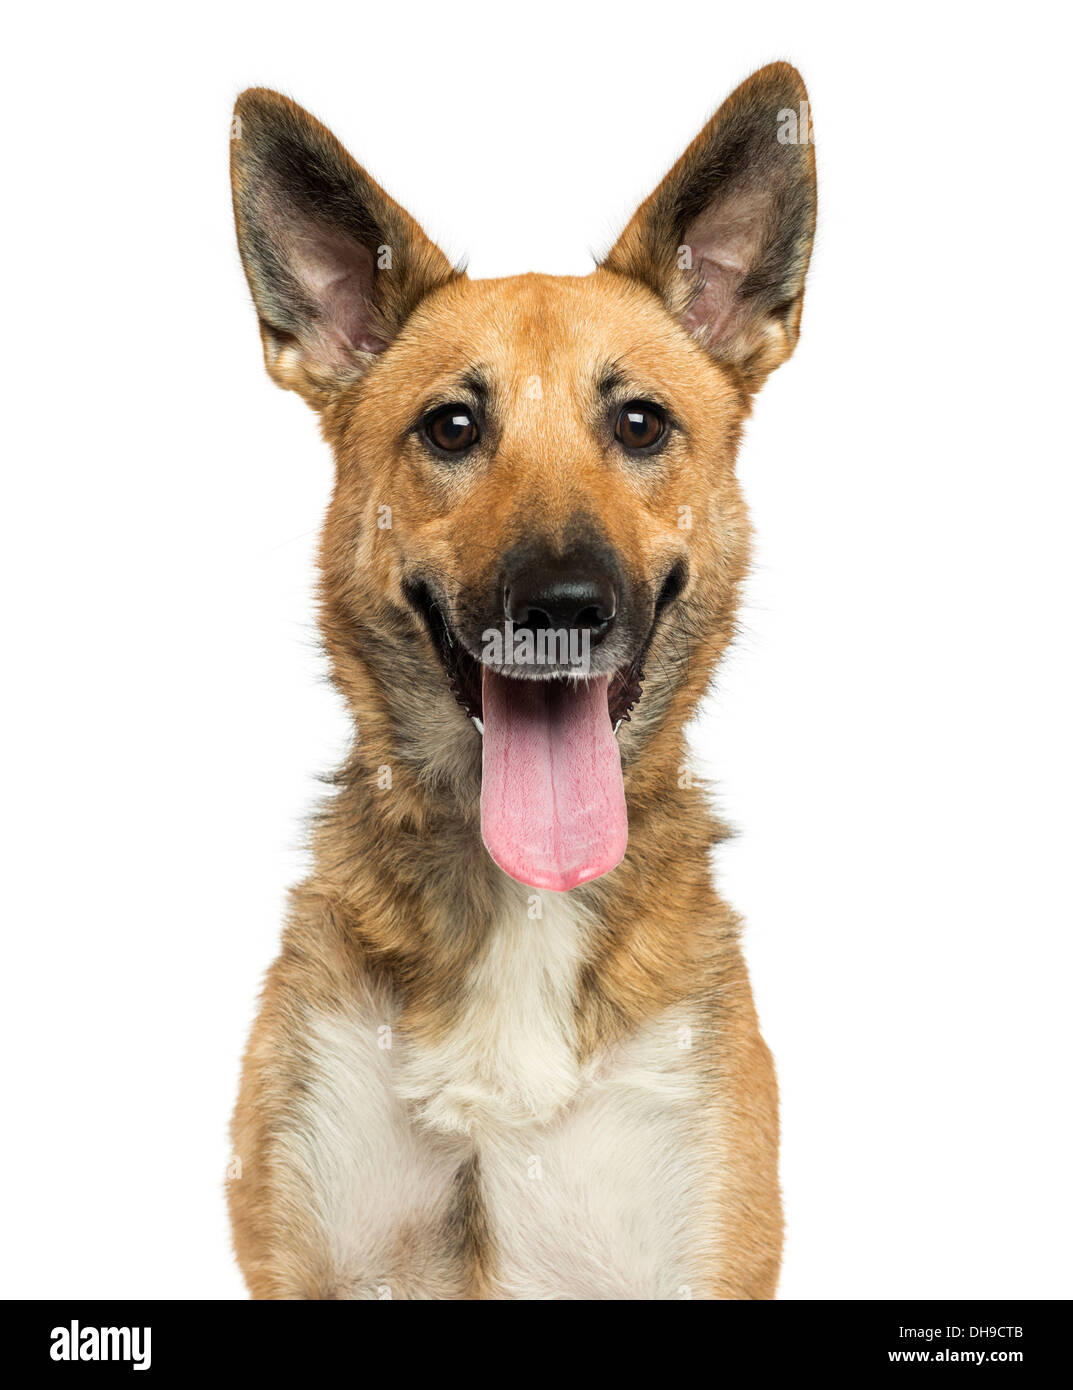 Nahaufnahme von einem belgischen Schäferhund keuchend vor weißem Hintergrund Stockfoto